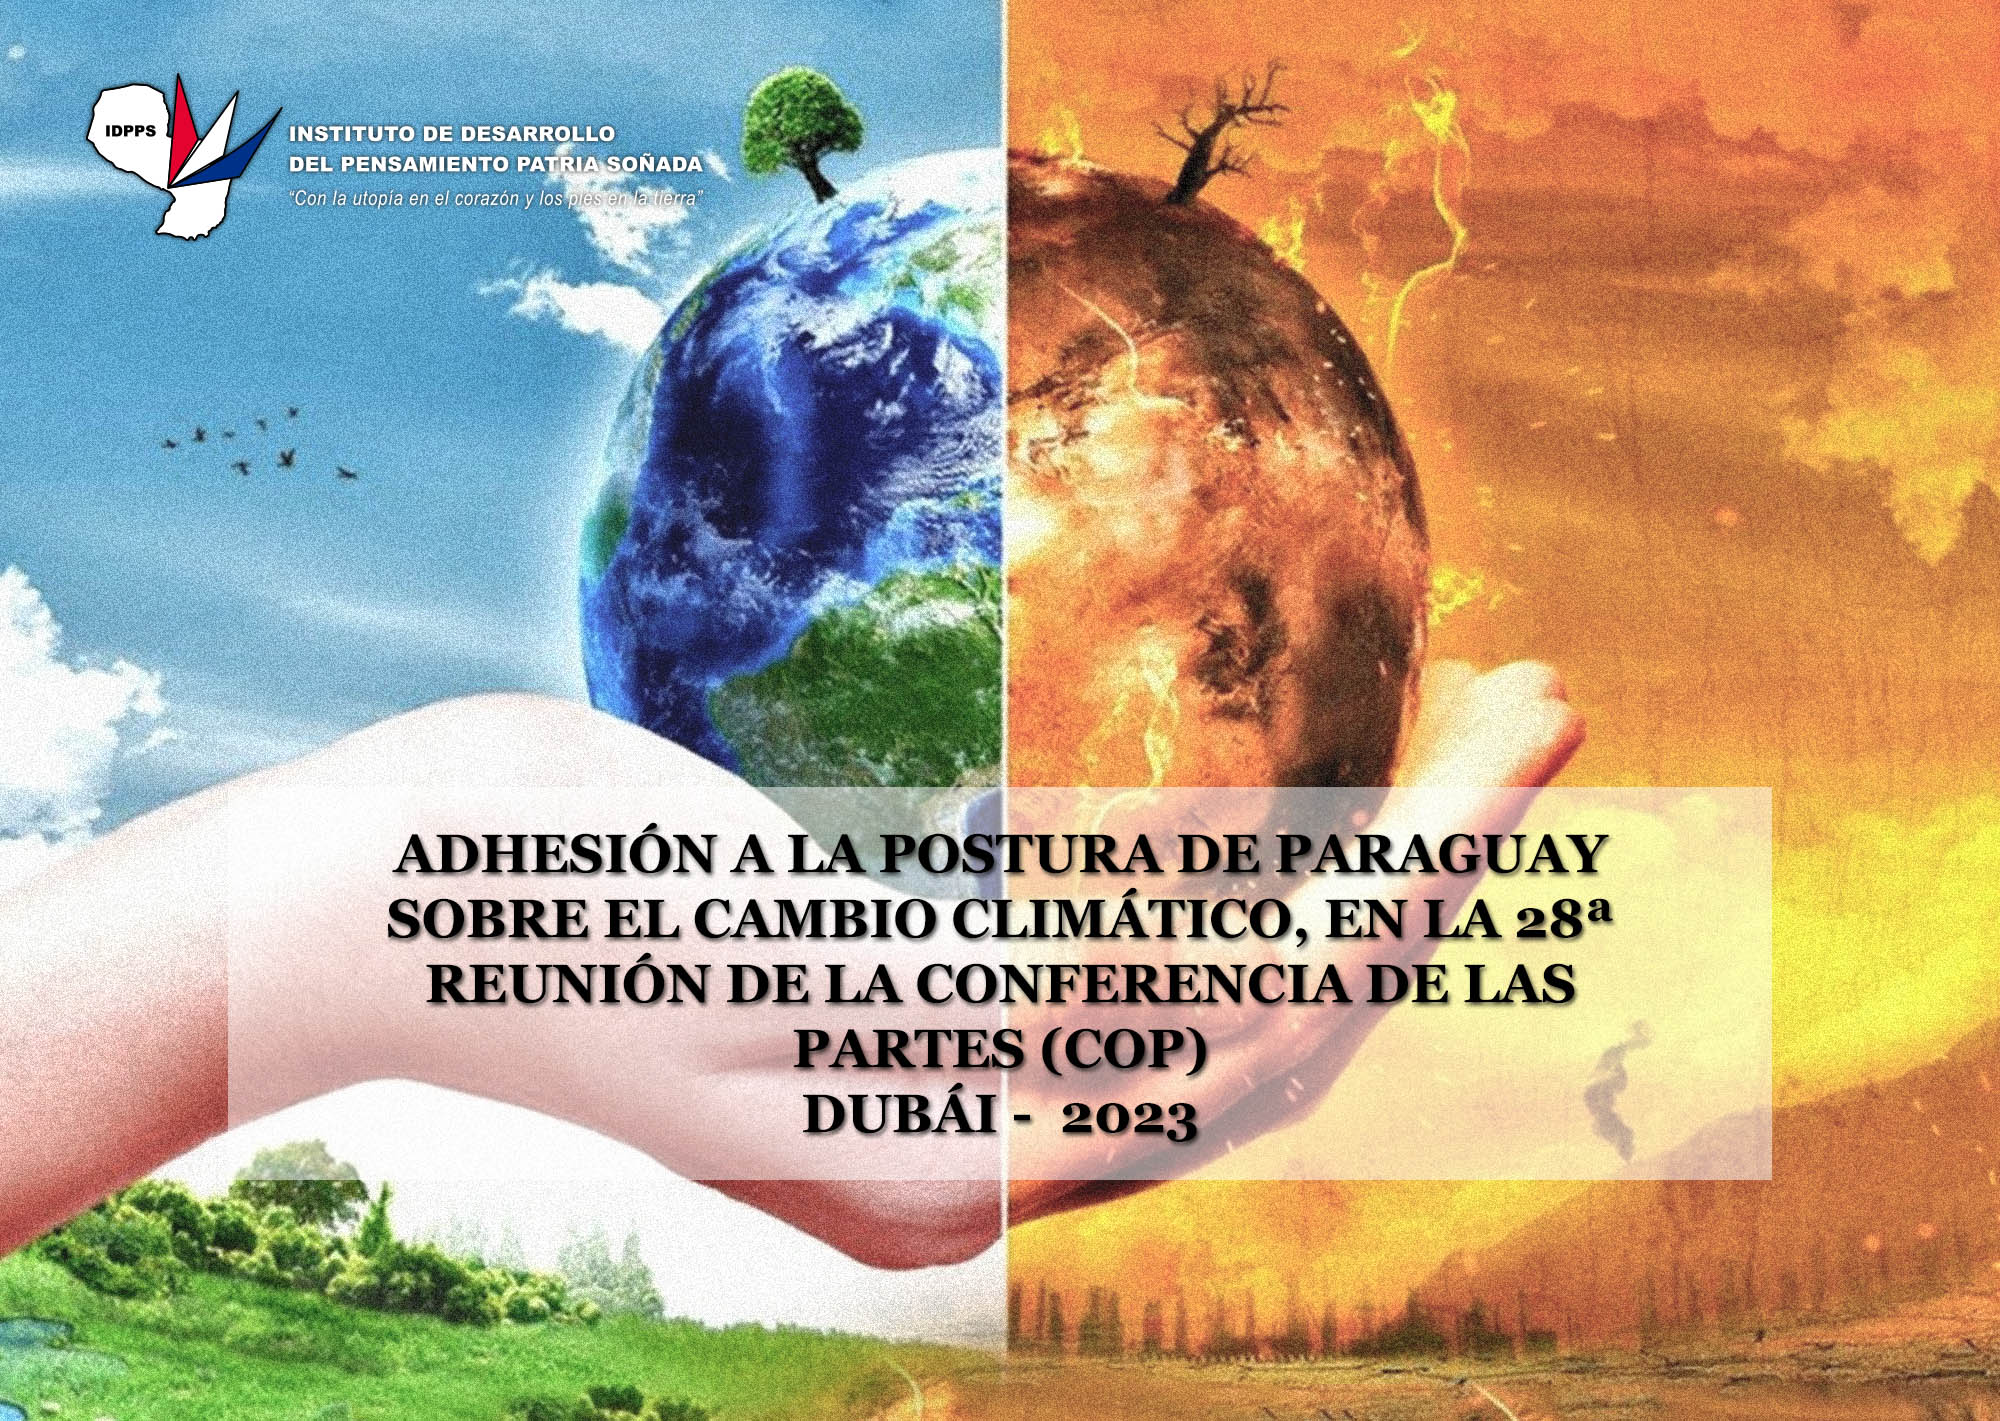 Adhesión a la postura de Paraguay sobre cambio climático en la 28ª Reunión de la COP